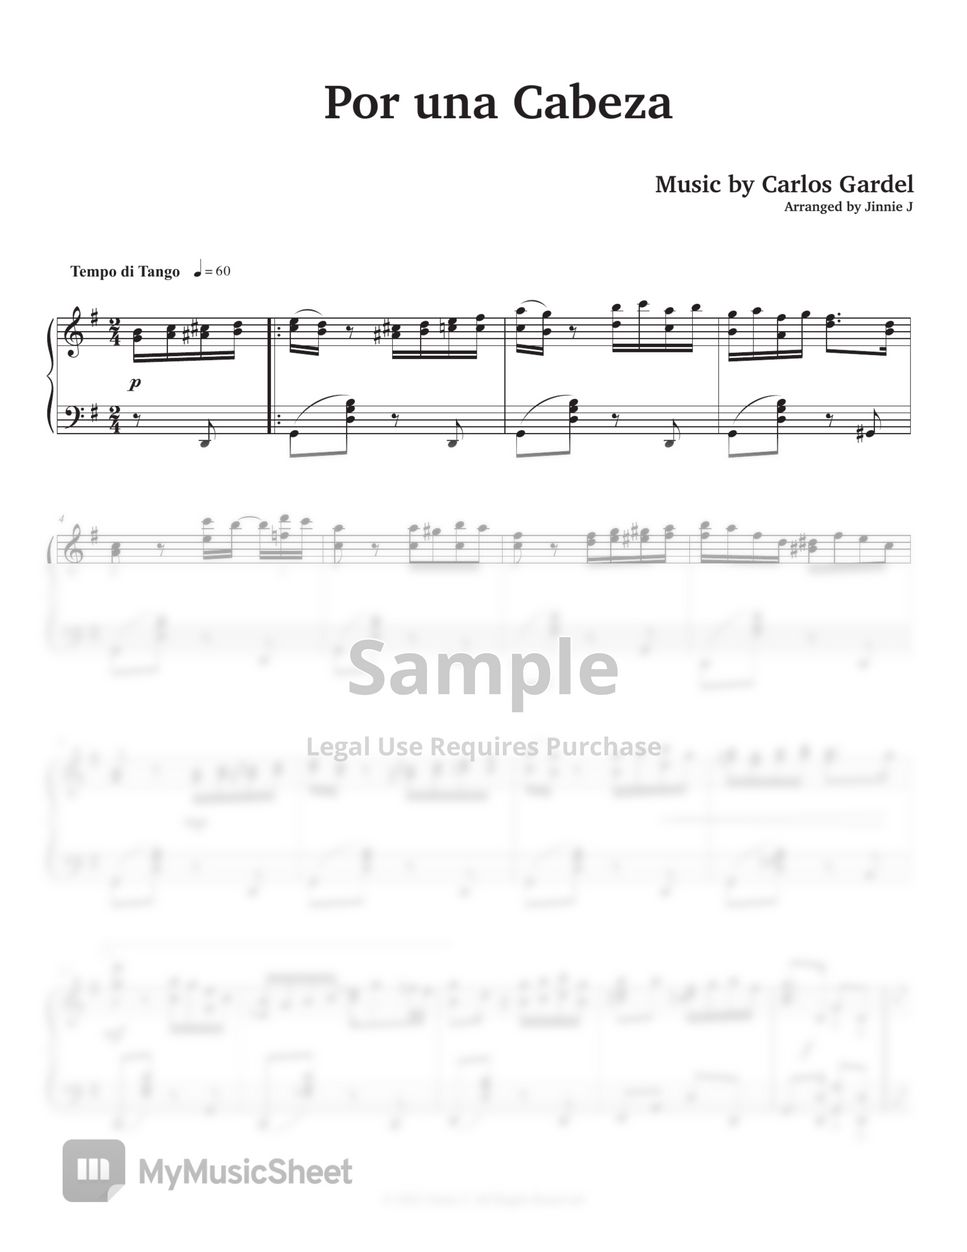 Carlos Gardel - Por una Cabeza (여인의 향기 OST) by Jinnie J